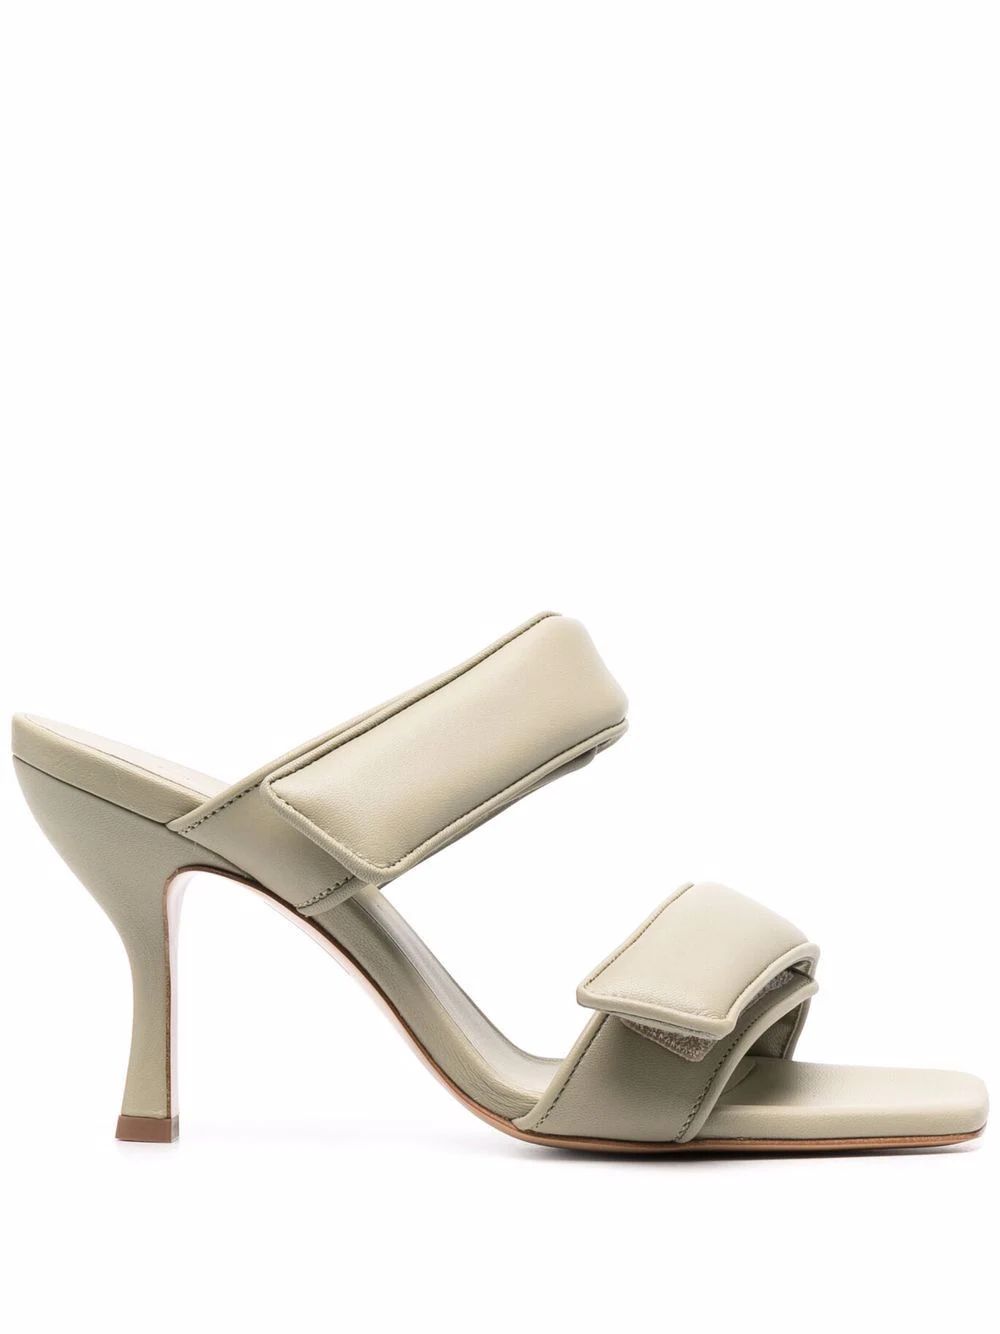 GIABORGHINI x Pernille Teisbaek 95mm Sandals - Farfetch | Farfetch Global